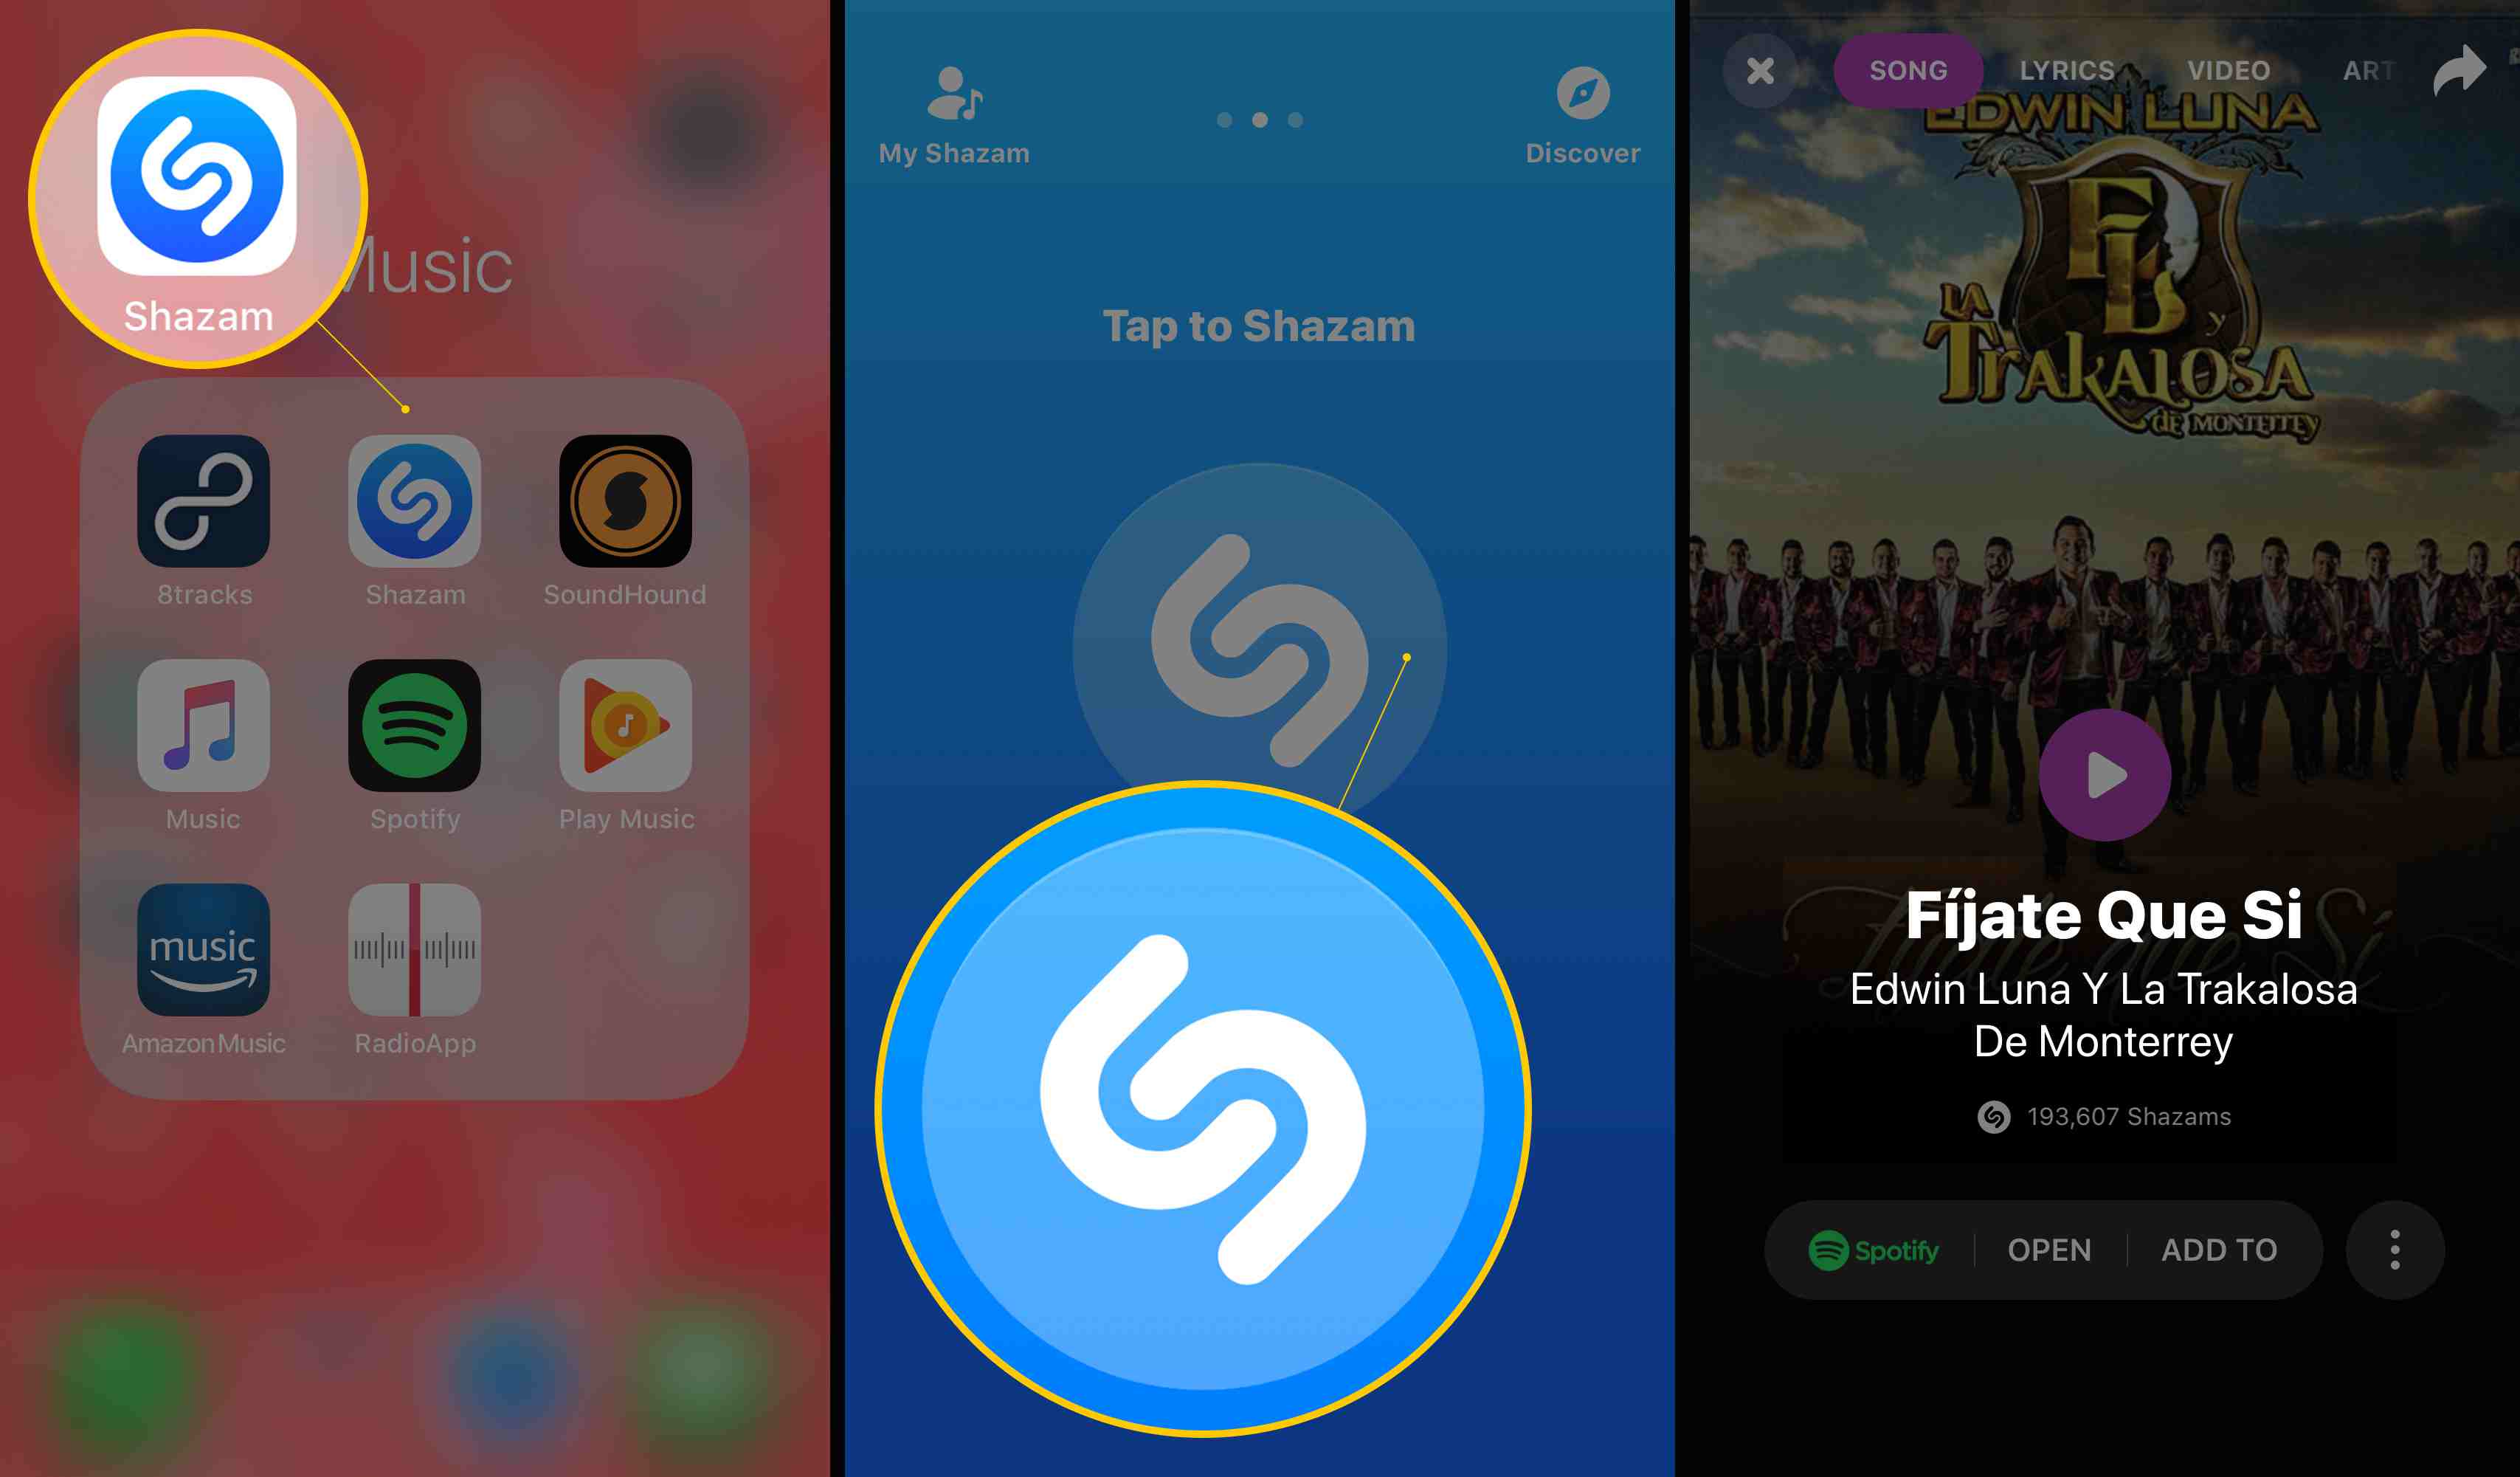 Tre iOS-skärmar som visar Shazam-appikonen, Tap to Shazam och en hittad låt (Fijate Que Si)